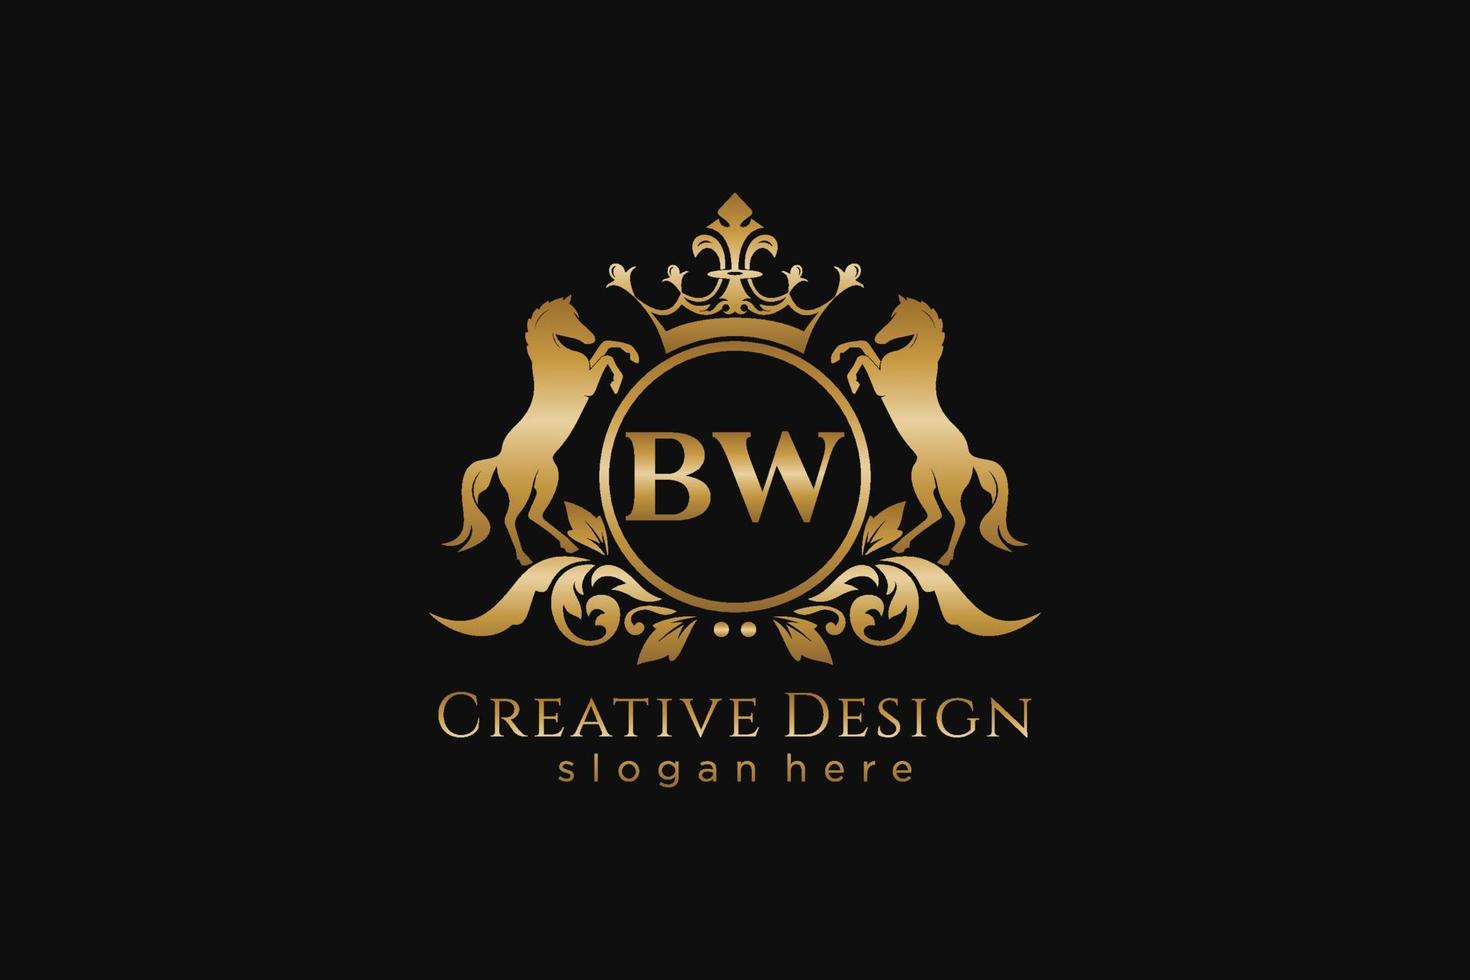 cresta dorada retro bw inicial con círculo y dos caballos, plantilla de insignia con pergaminos y corona real - perfecto para proyectos de marca de lujo vector